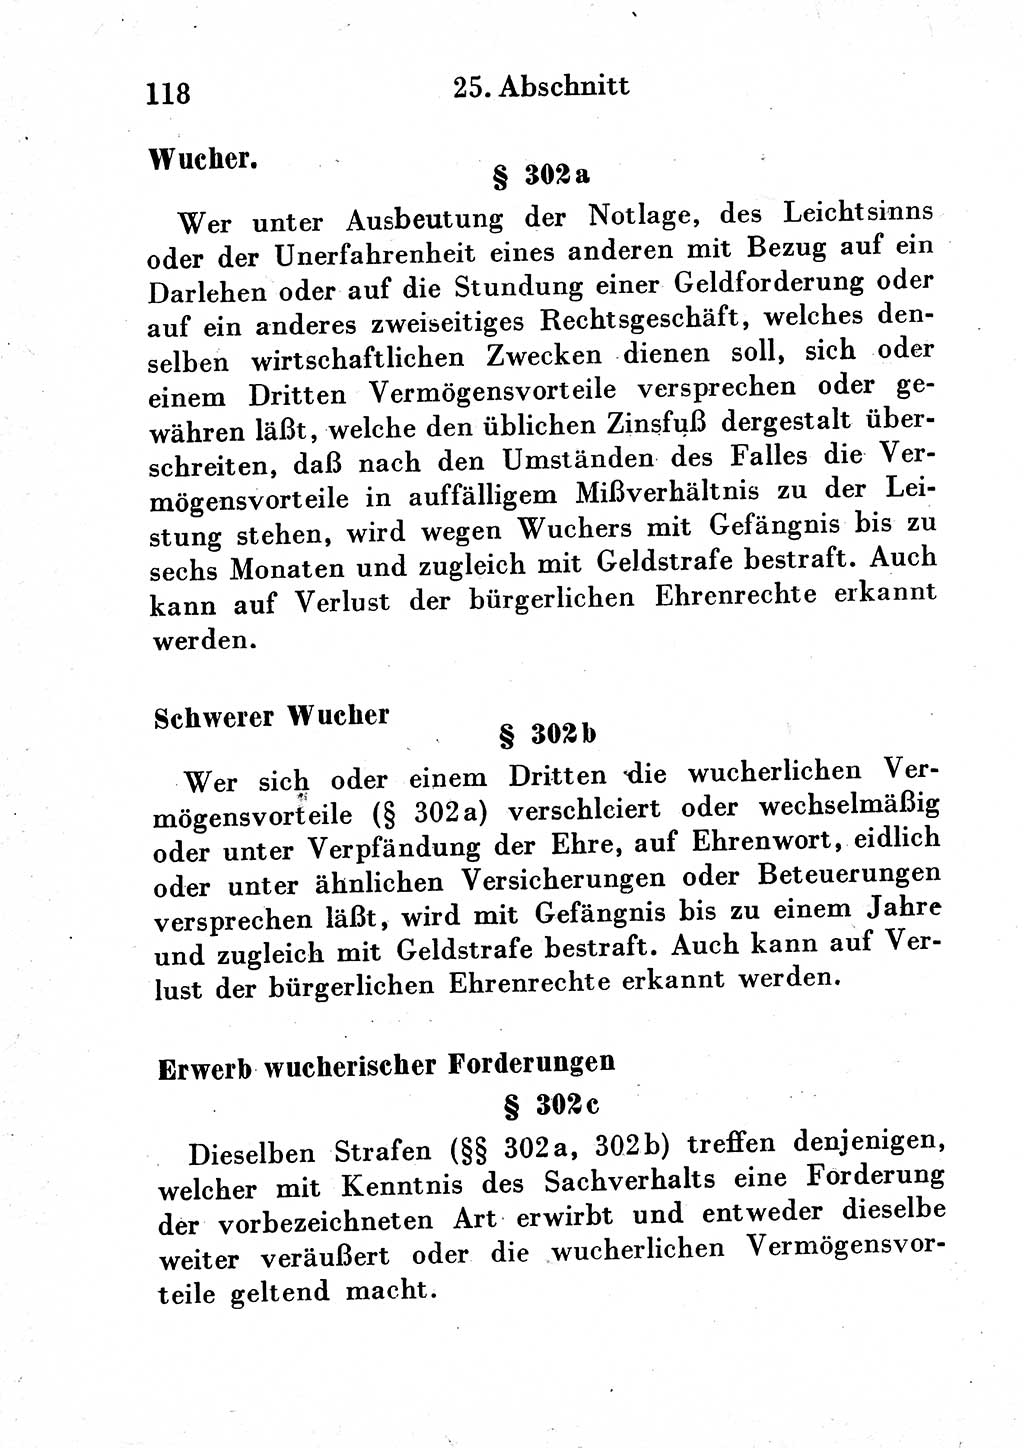 Strafgesetzbuch (StGB) und andere Strafgesetze [Deutsche Demokratische Republik (DDR)] 1954, Seite 118 (StGB Strafges. DDR 1954, S. 118)